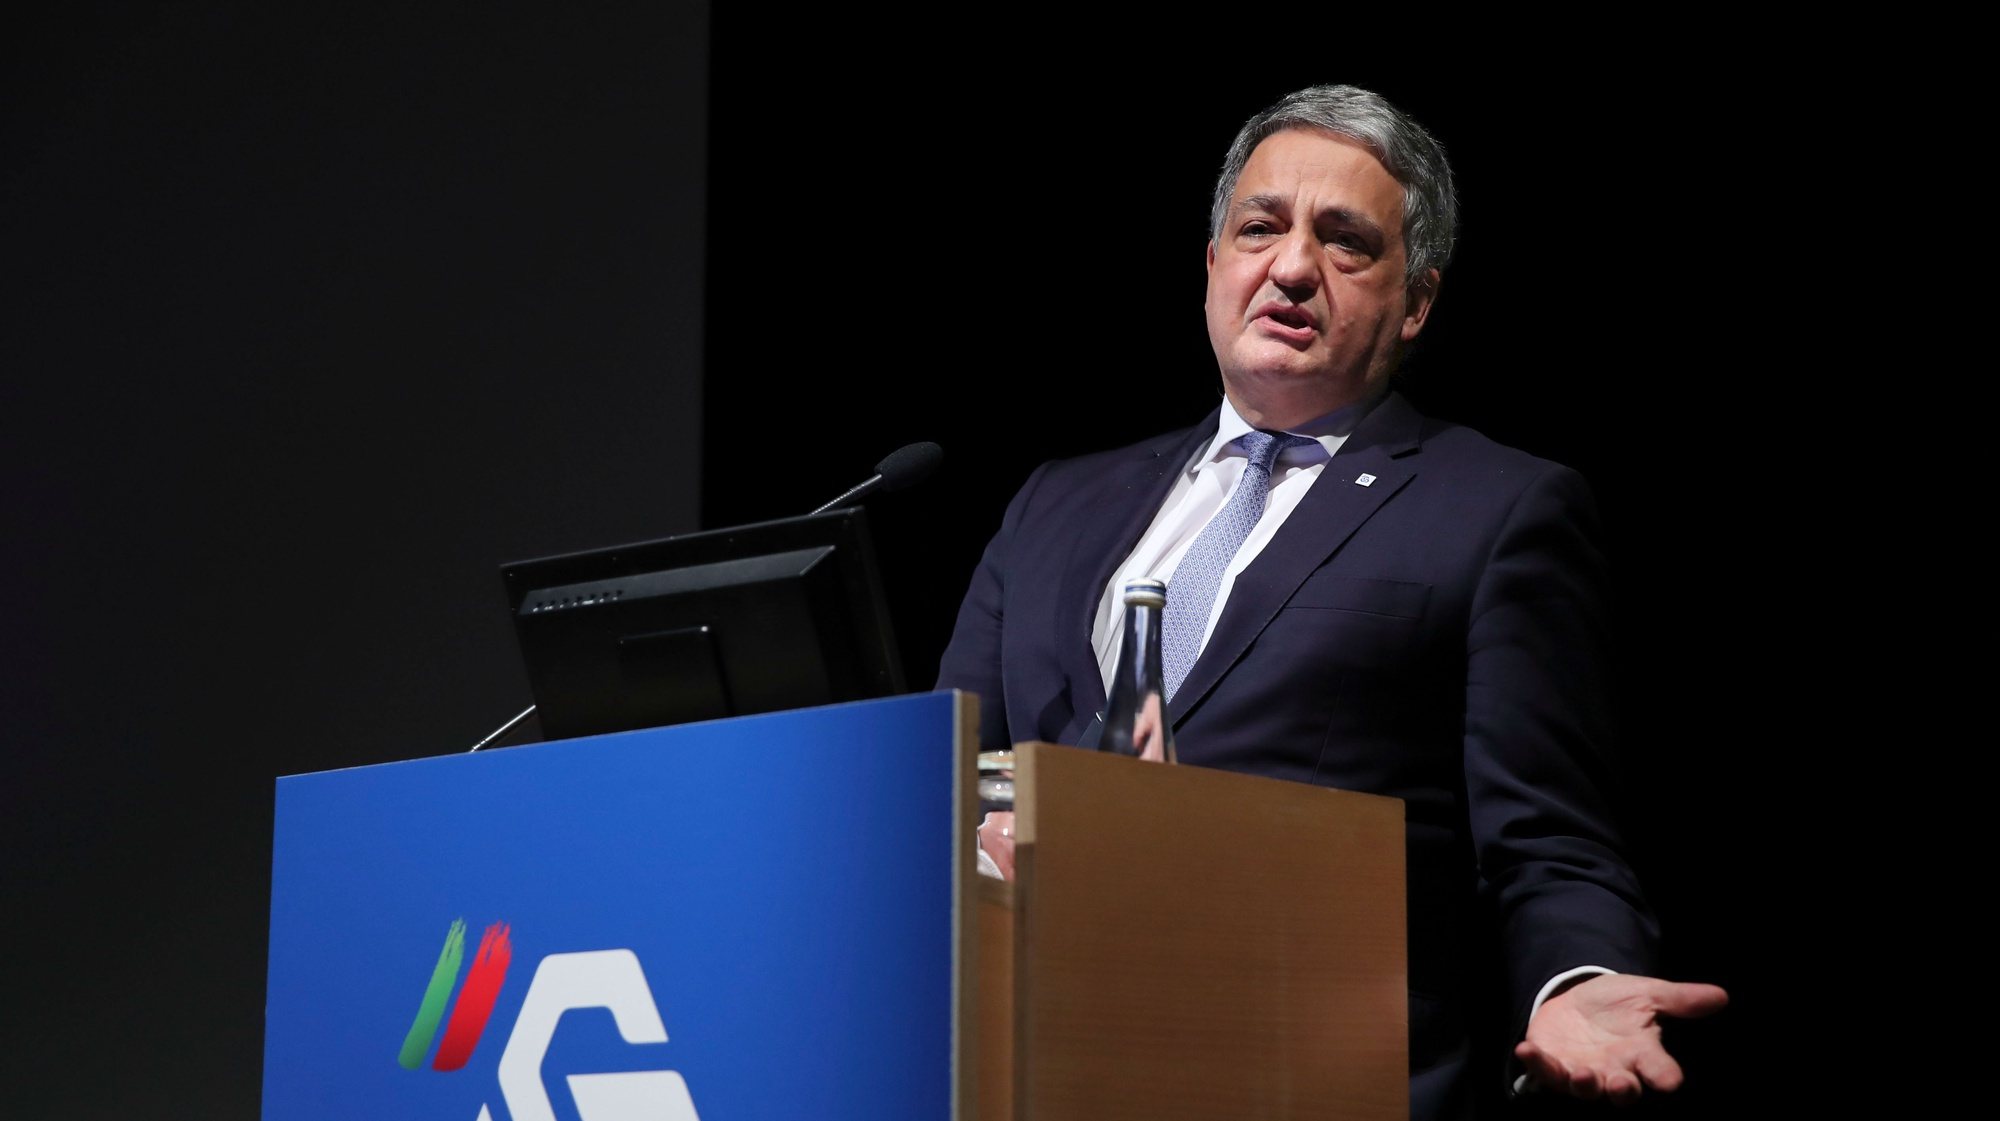 Paulo Macedo, CEO da Caixa Geral de Depósitos, durante a apresentação dos resultados anuais de 2021, na Culturgest, em Lisboa, 11 de fevereiro de 2022. MANUEL DE ALMEIDA/LUSA